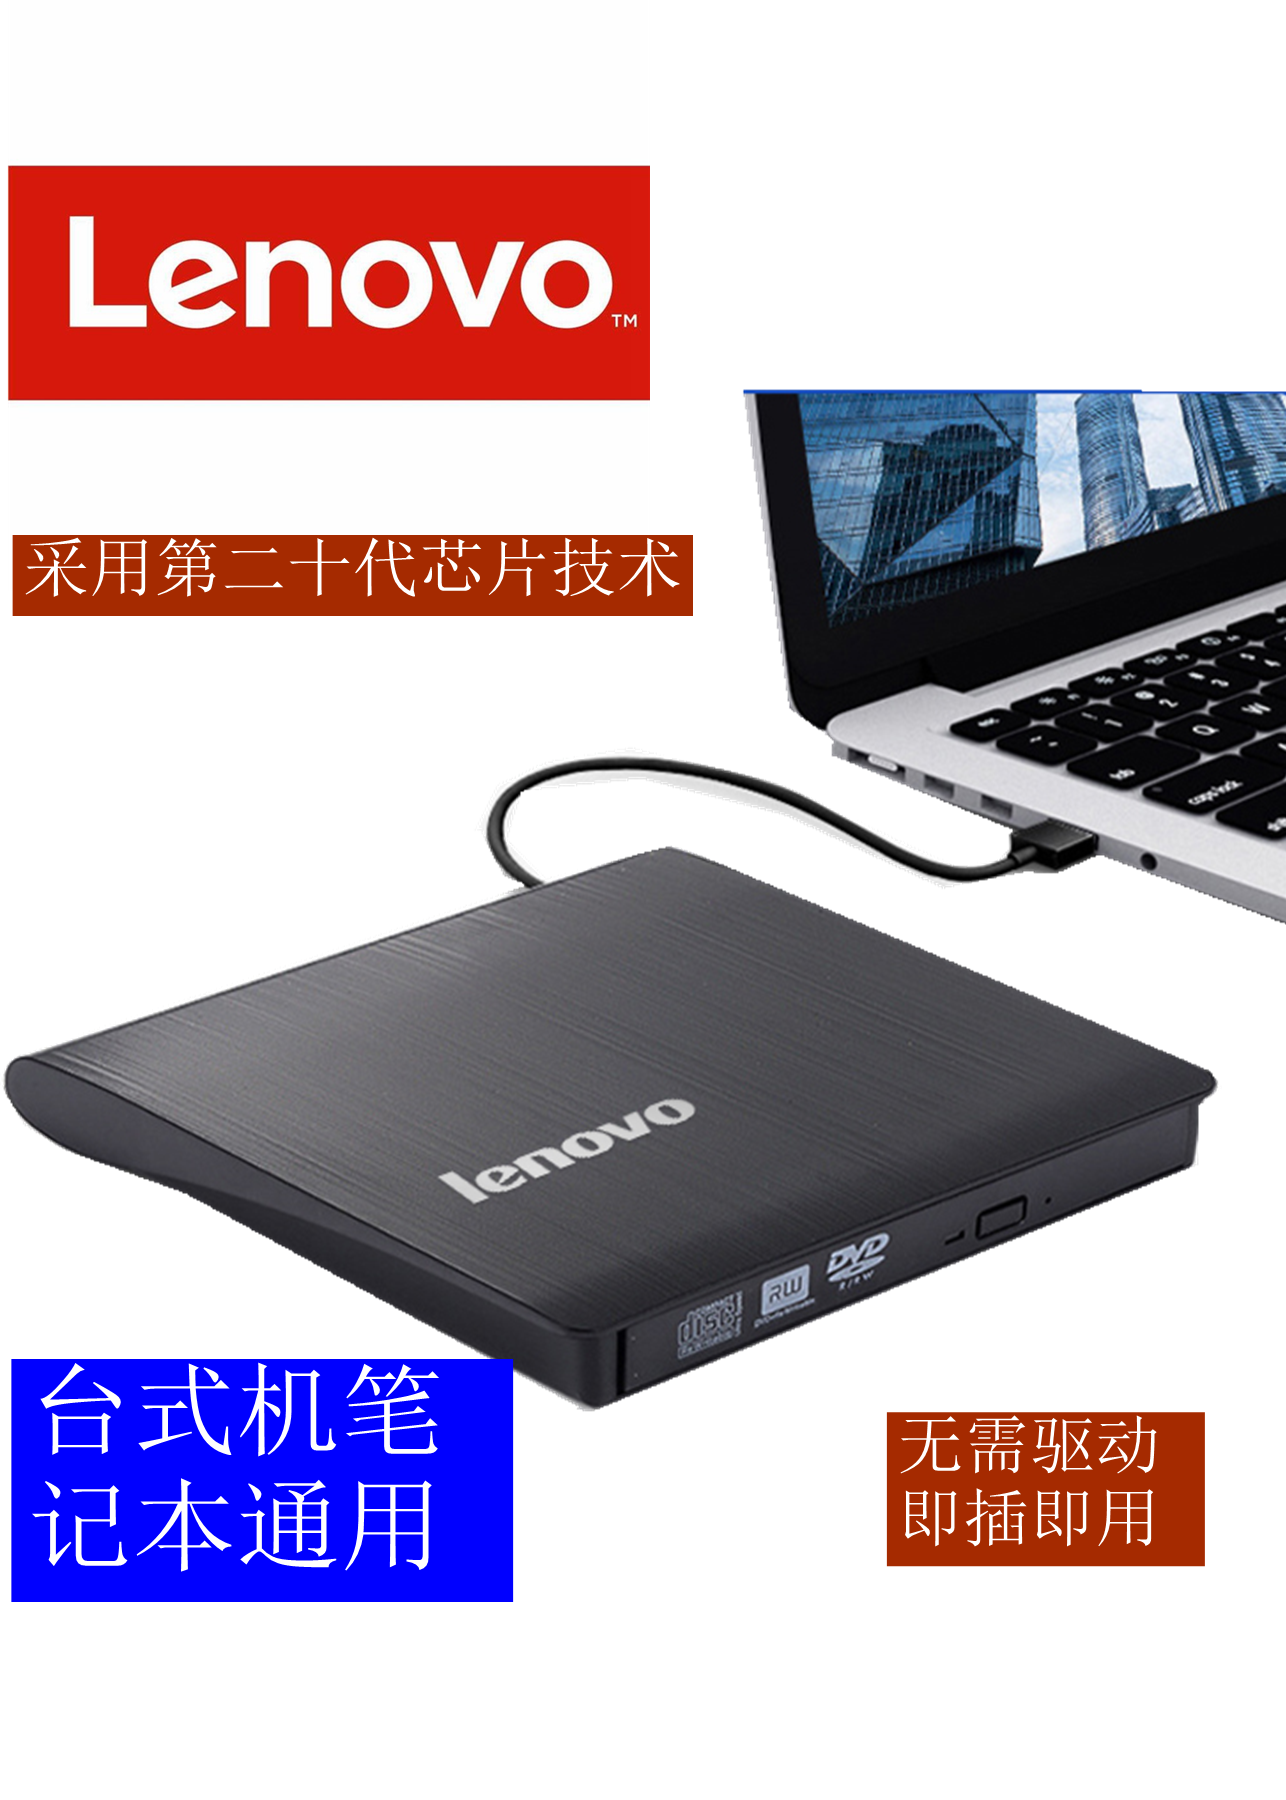 USB3.0联想外置光驱移动DVD/CD刻录机 台式电脑笔记本一体机通用